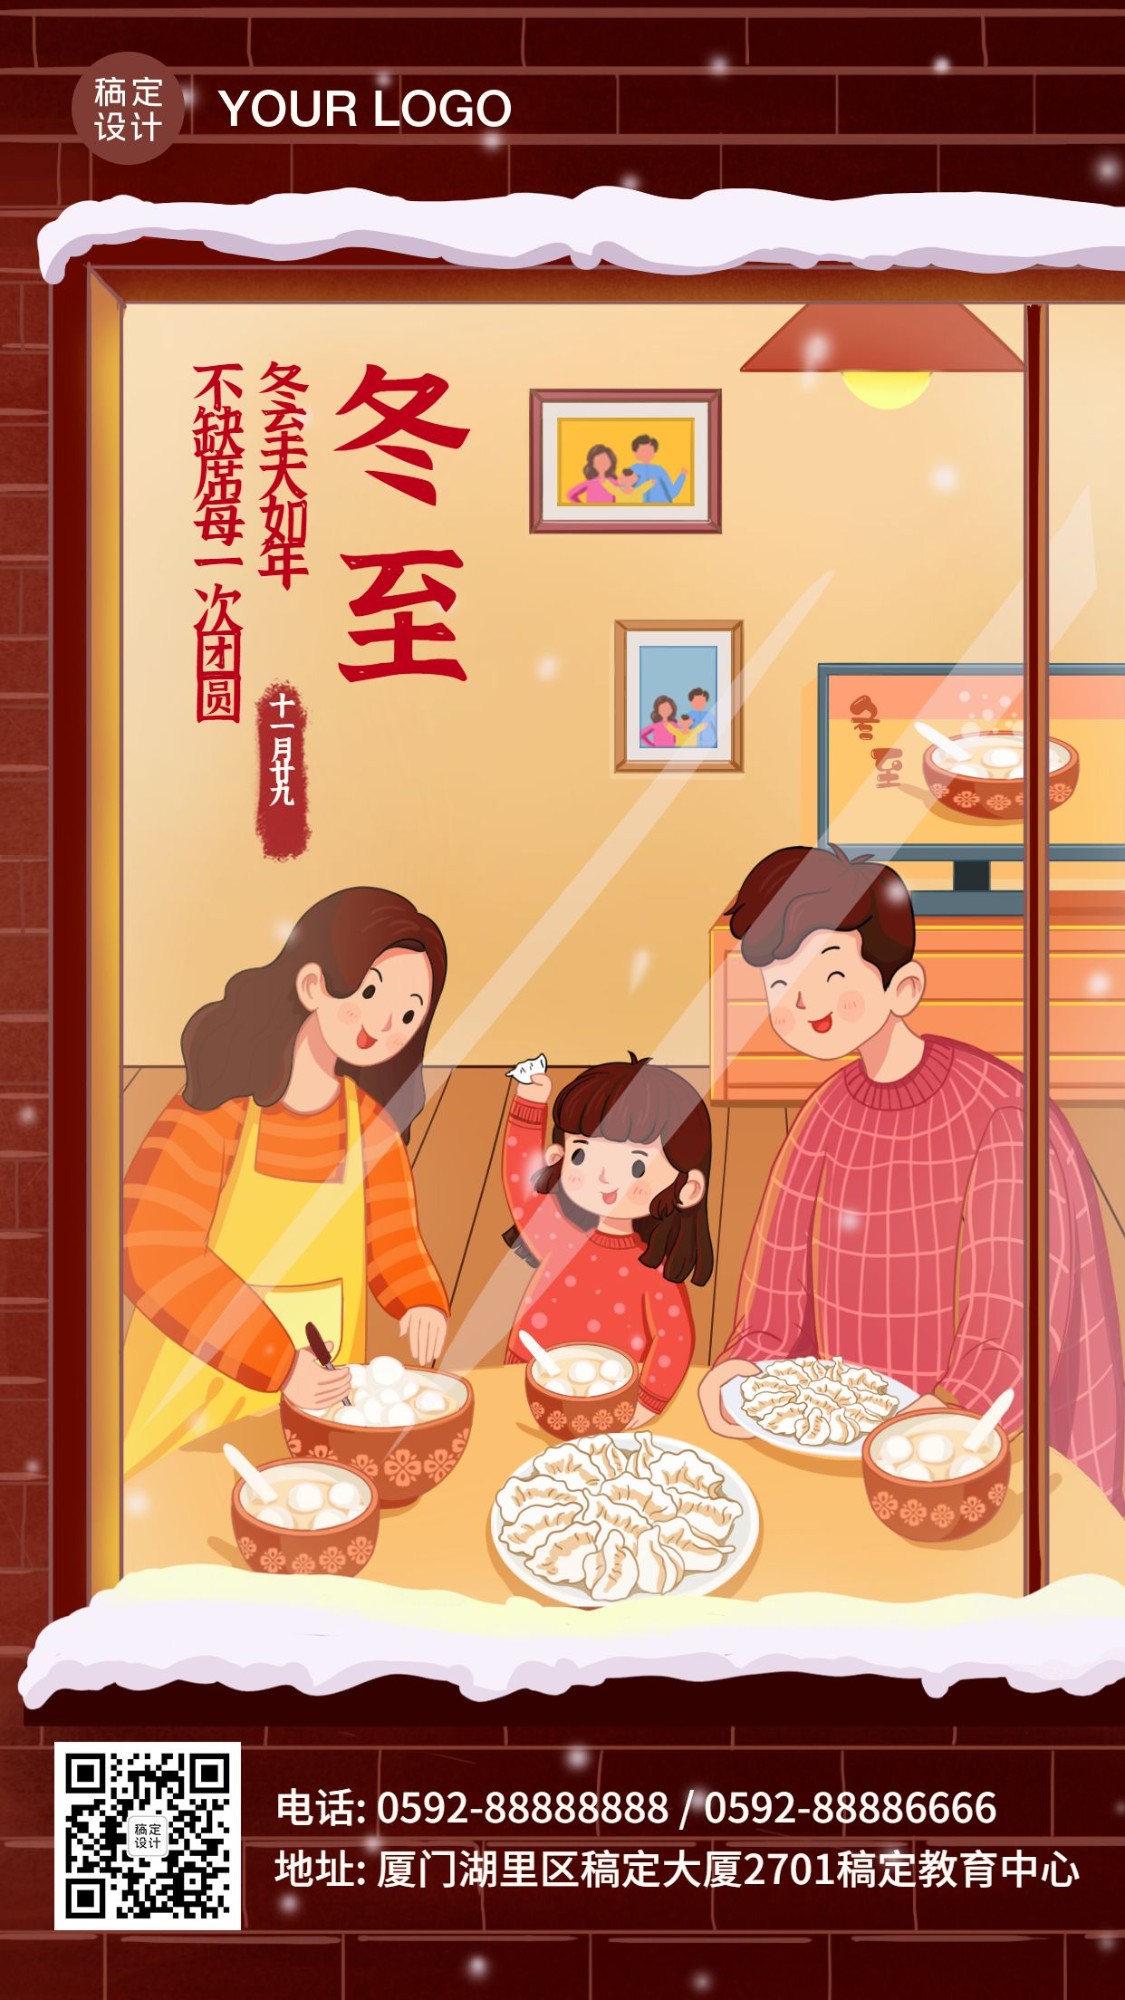 冬至饺子阖家团圆宣传手绘海报预览效果